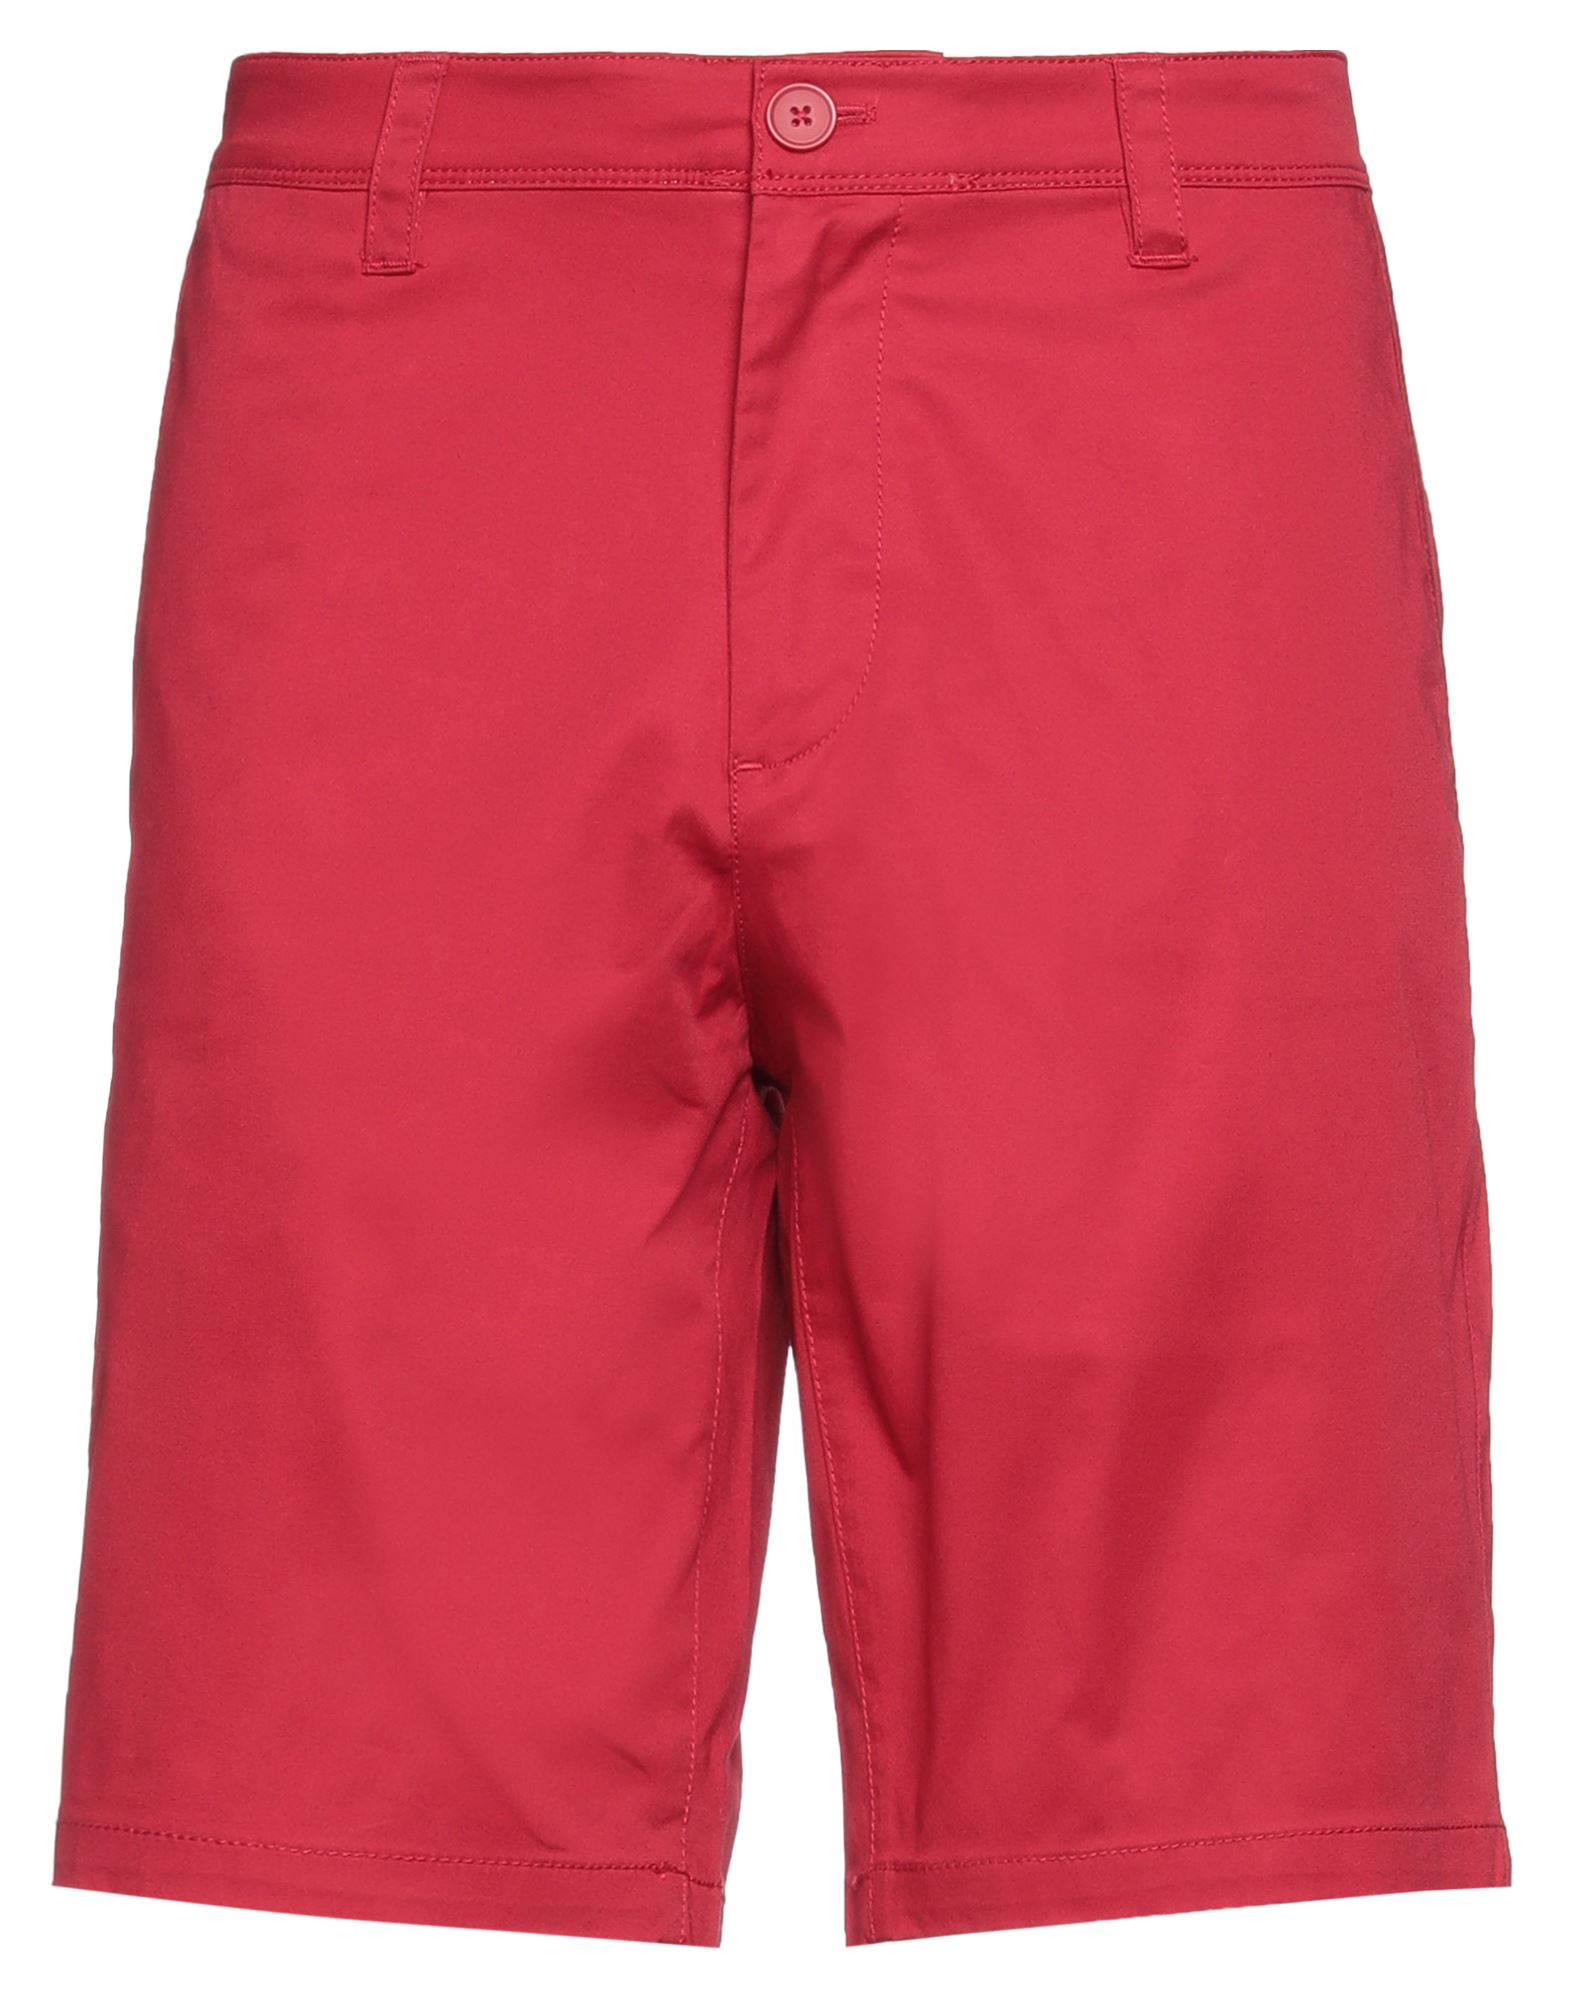 Armani Exchange Man Shorts & Bermuda Shorts Red Size 29 Cotton, Elastane